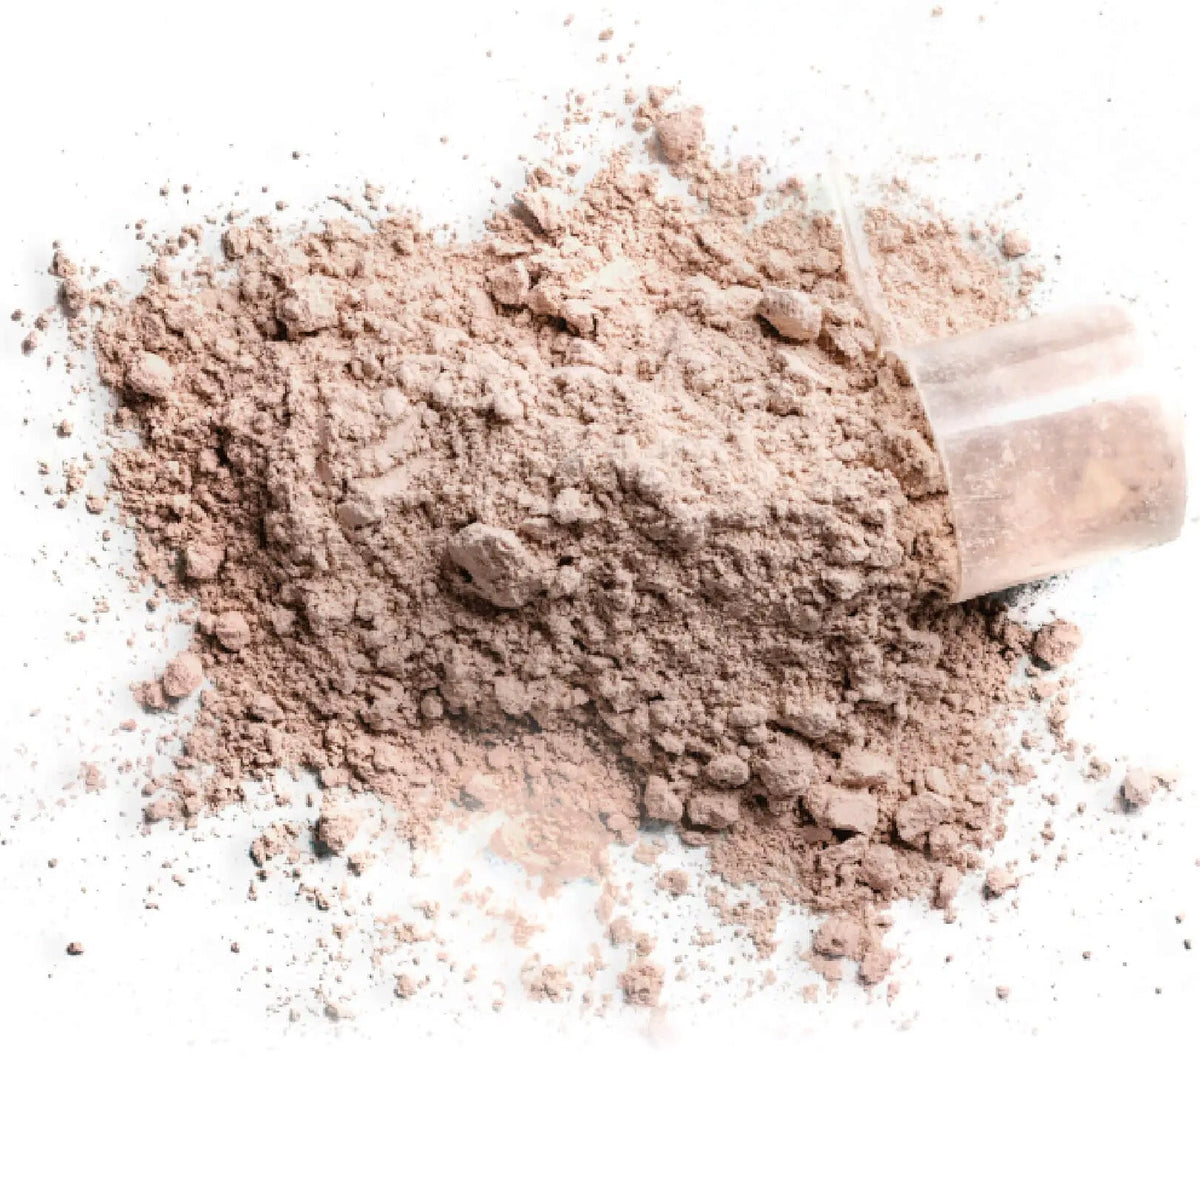 Protein powder detail